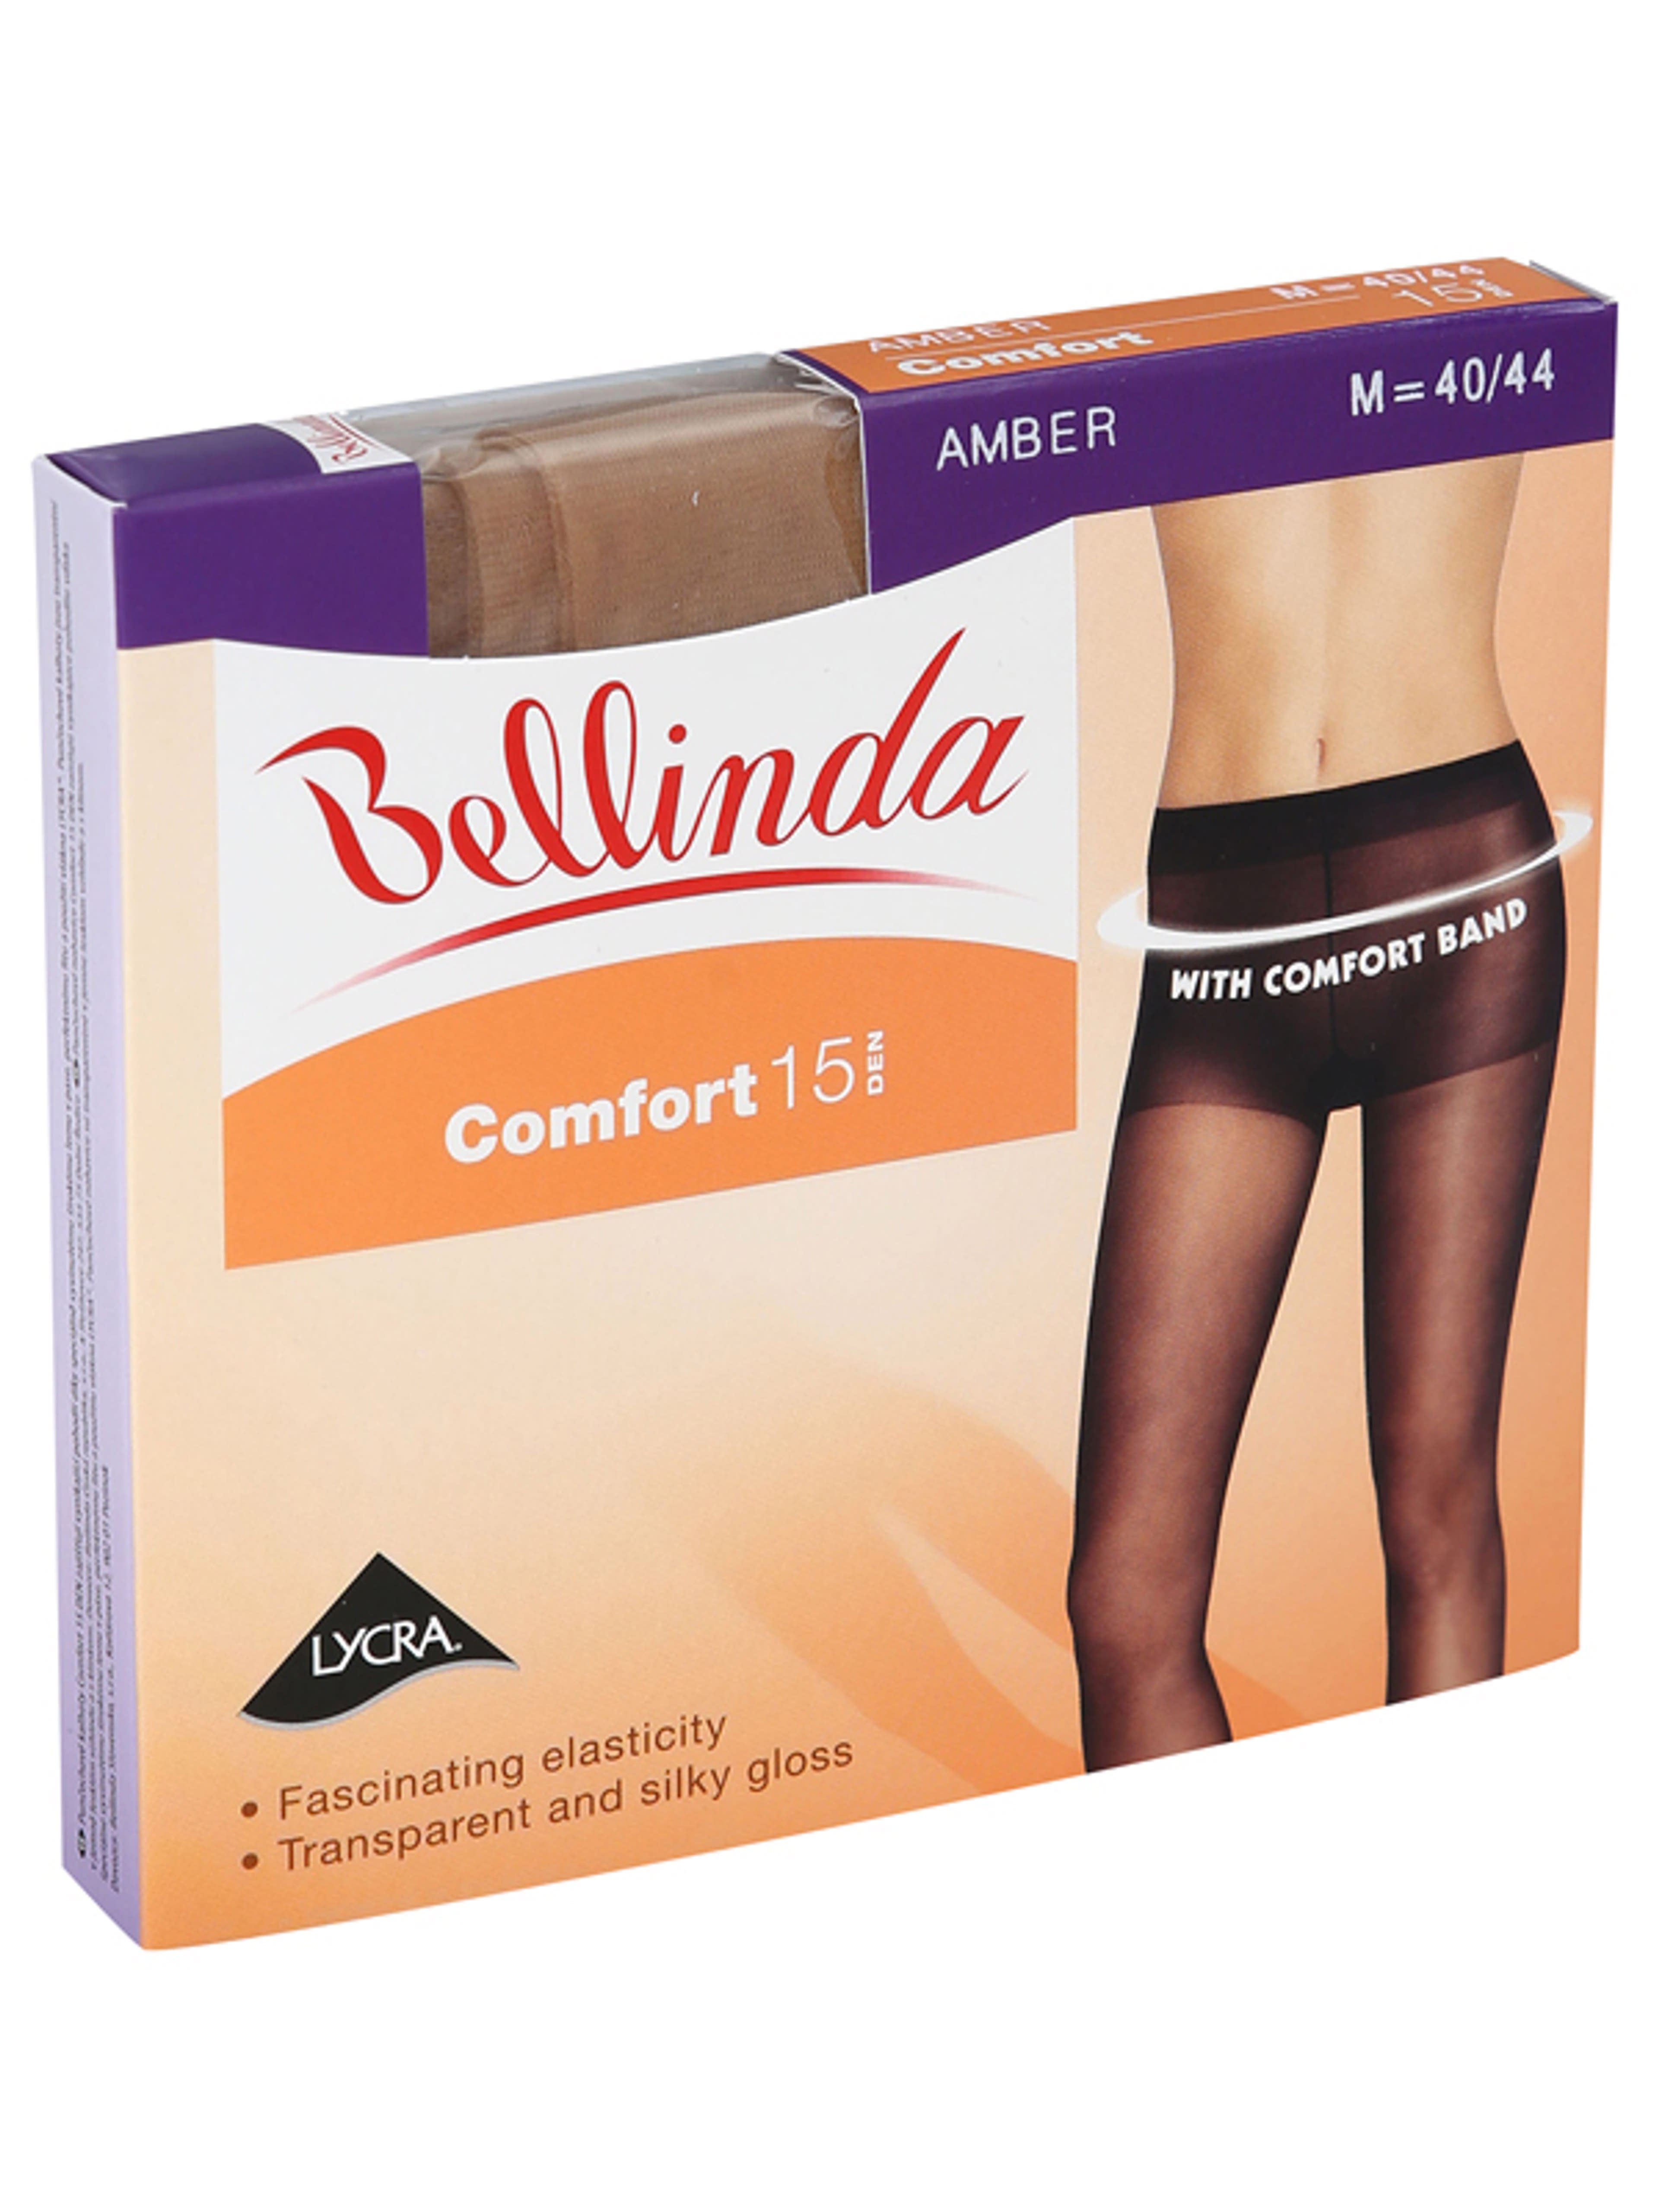 Bellinda Comfort 15 Den Amber M Harisnya - 1 db